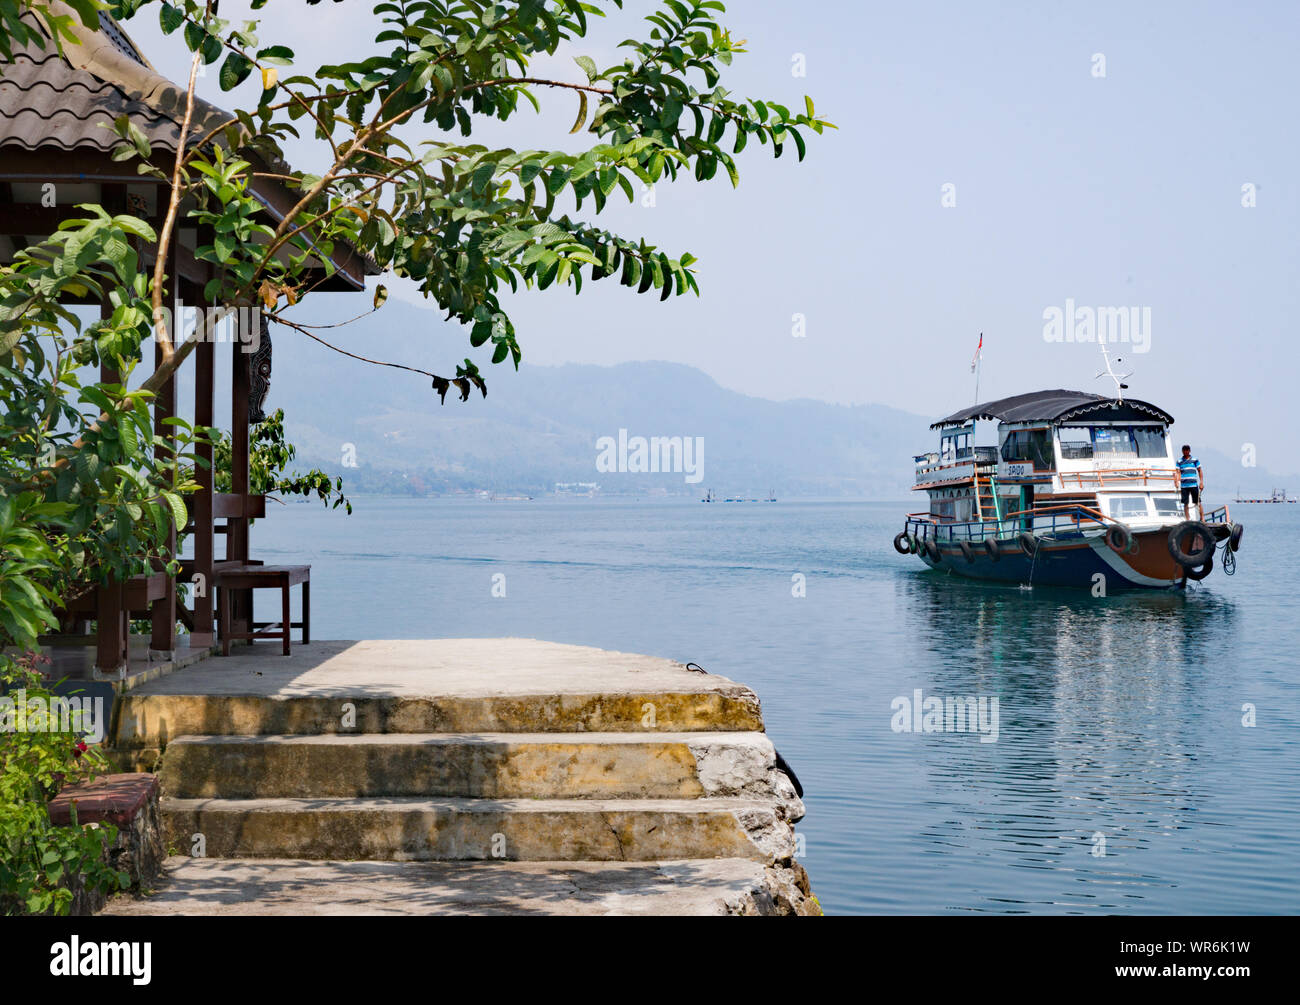 Ferry boat, Lake Toba, North Sumatra, Indonesia Stock Photo